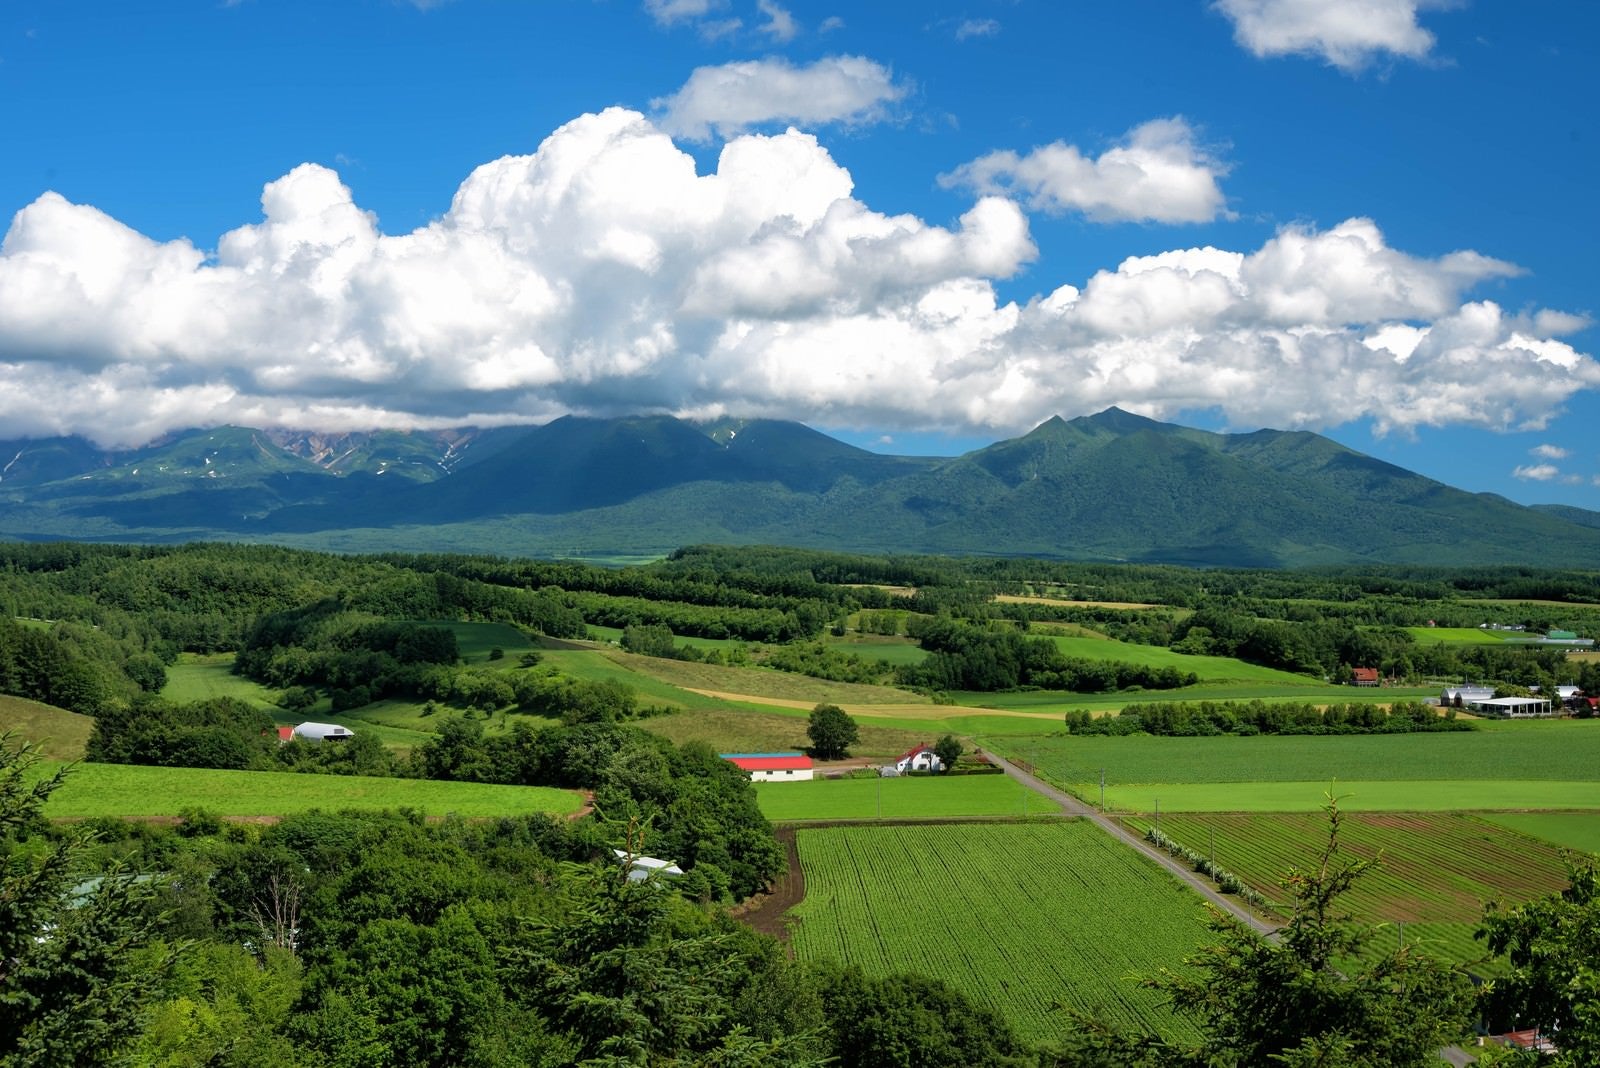 「十勝岳に広がる積雲」の写真